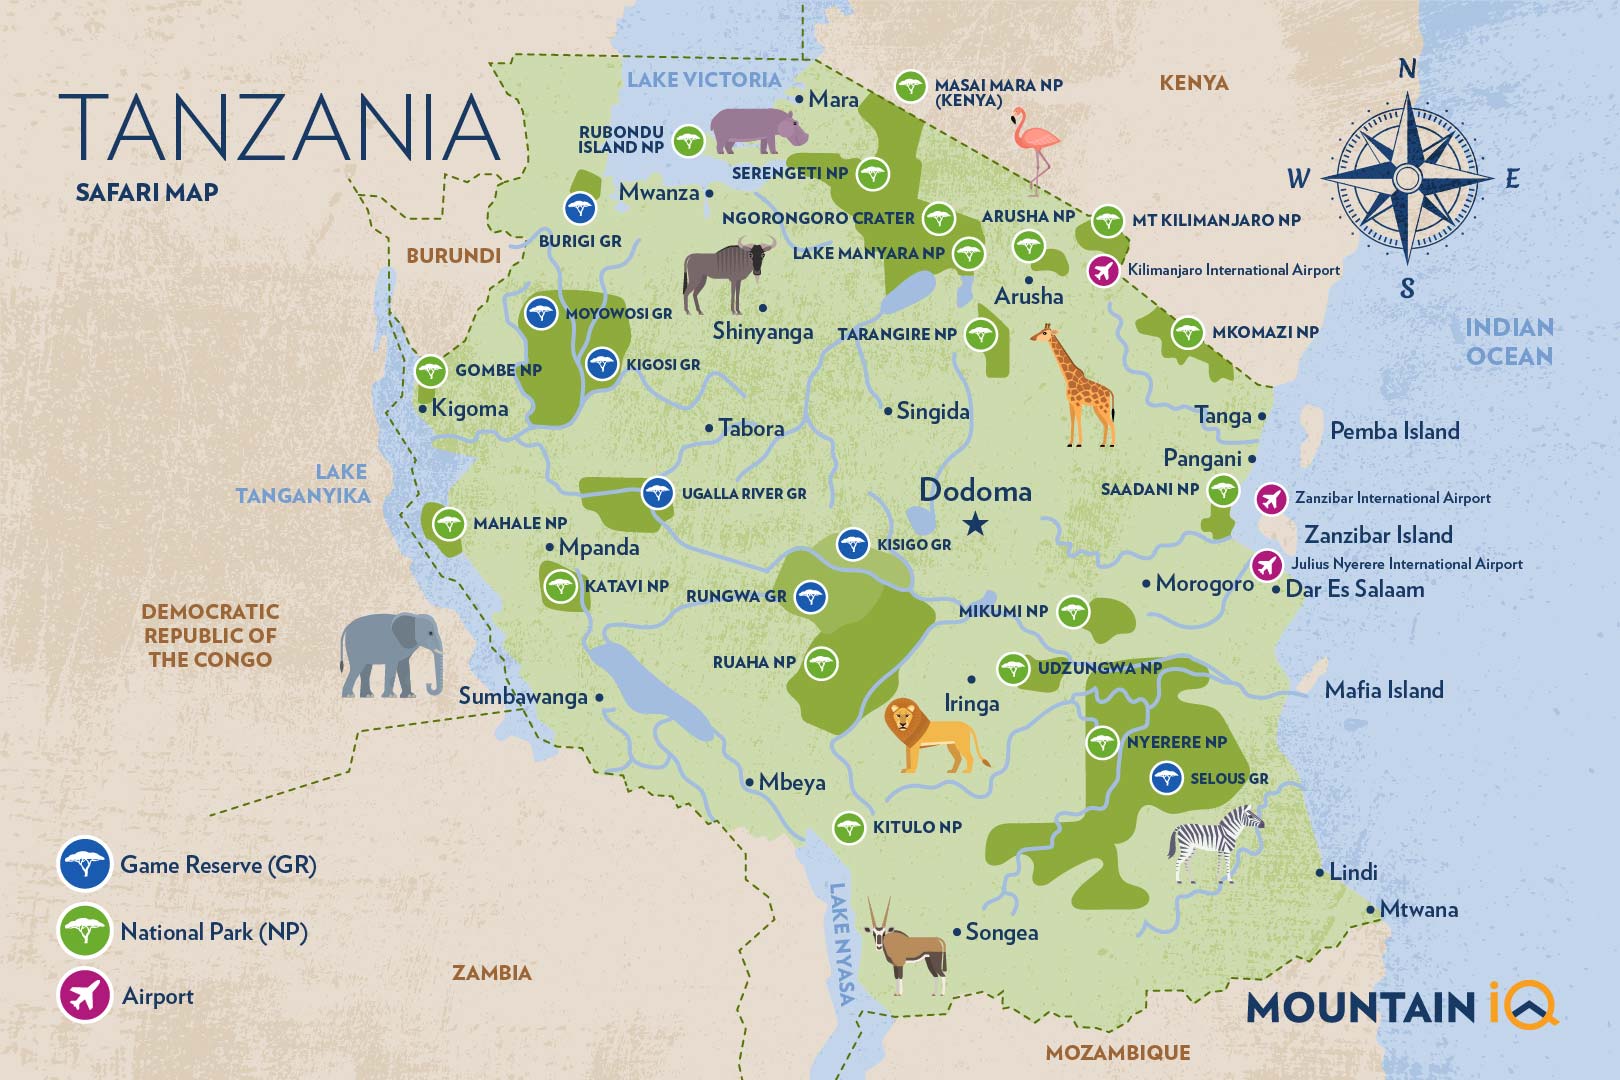 Tanzania safari map by Mountain IQ